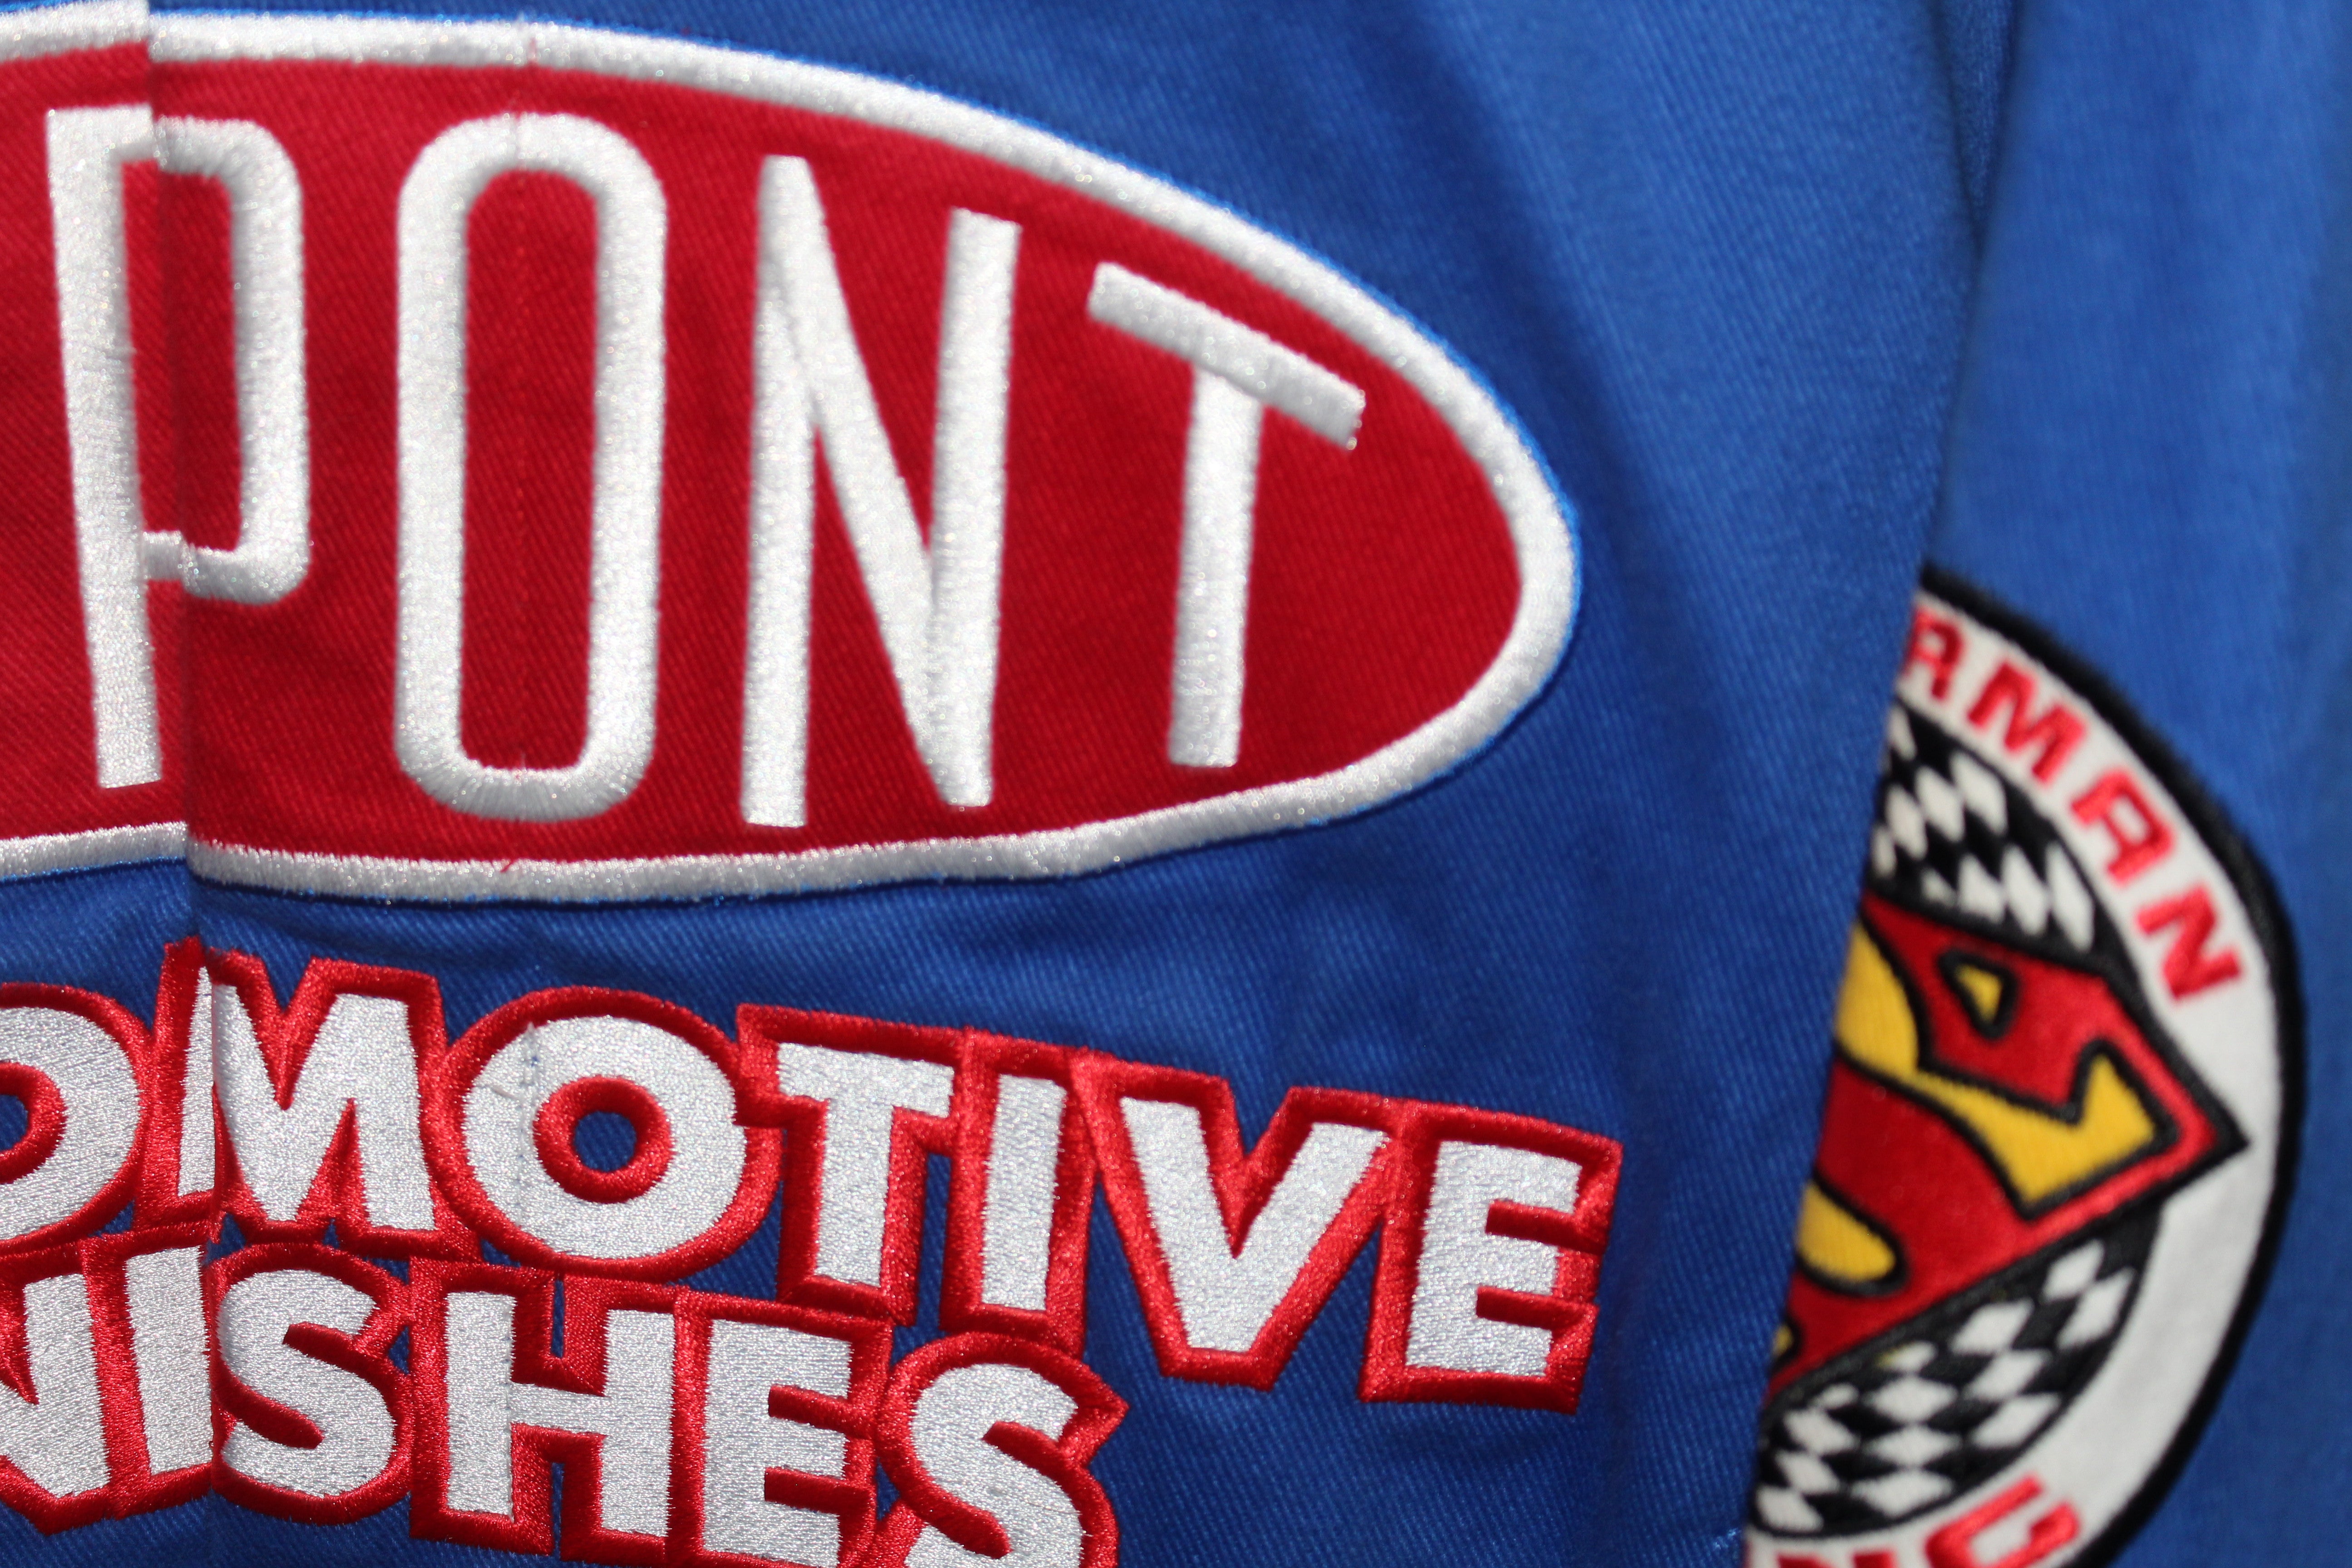 Rare Superman DuPont Racing NASCAR Jeff Gordon #24 (XXL)